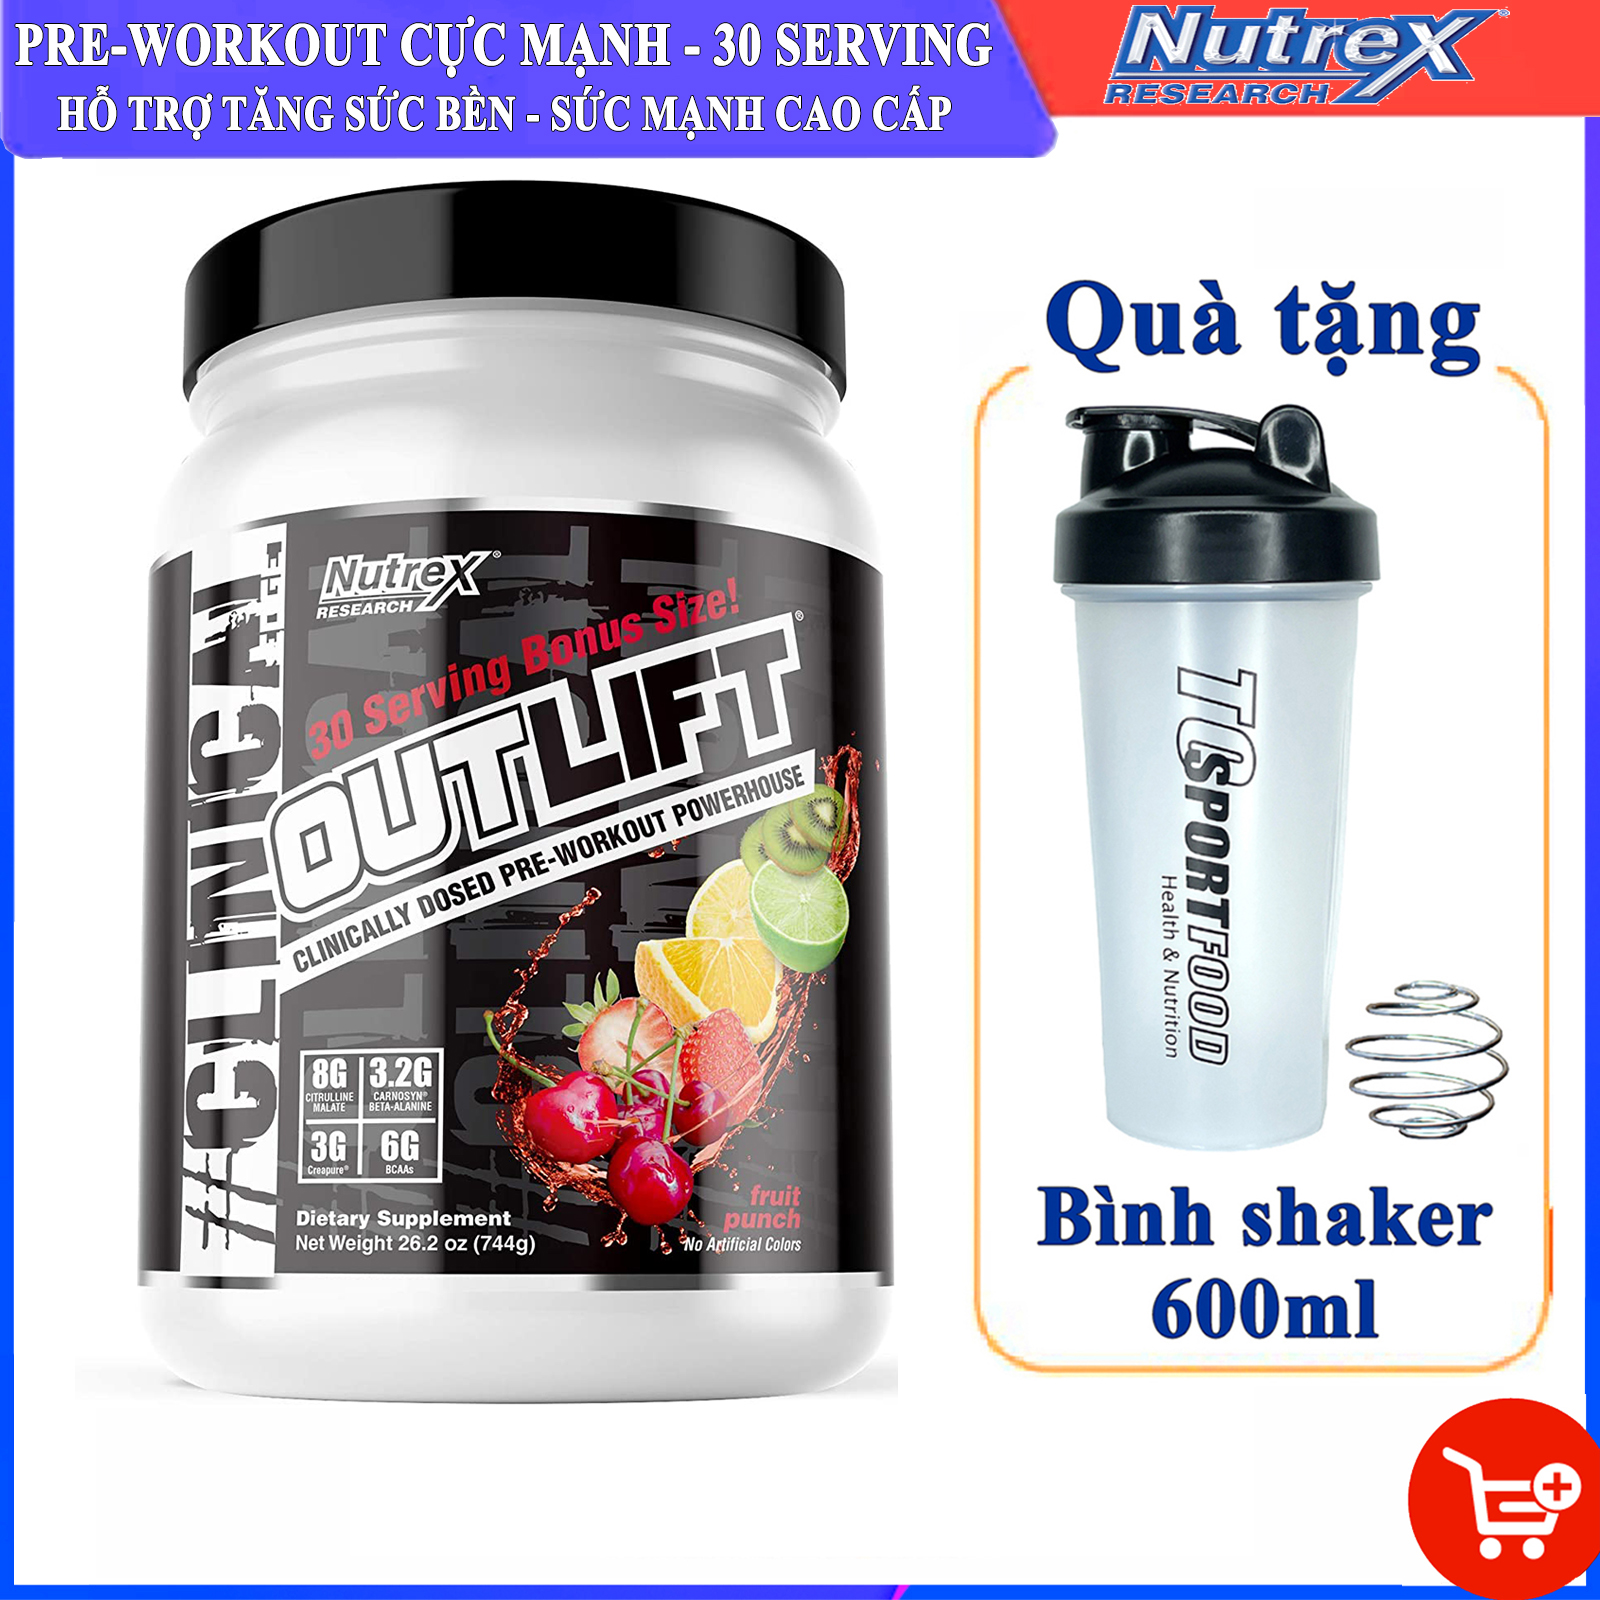 Combo Pre-workout Outlift của Nutrex hương Fruit Punch hộp 30 lần dùng hỗ trợ tăng sức bền, sức mạnh trước tập, giảm cân, đốt mỡ cho GYMER &amp; Bình shaker 600ml (Mẫu ngẫu nhiên)